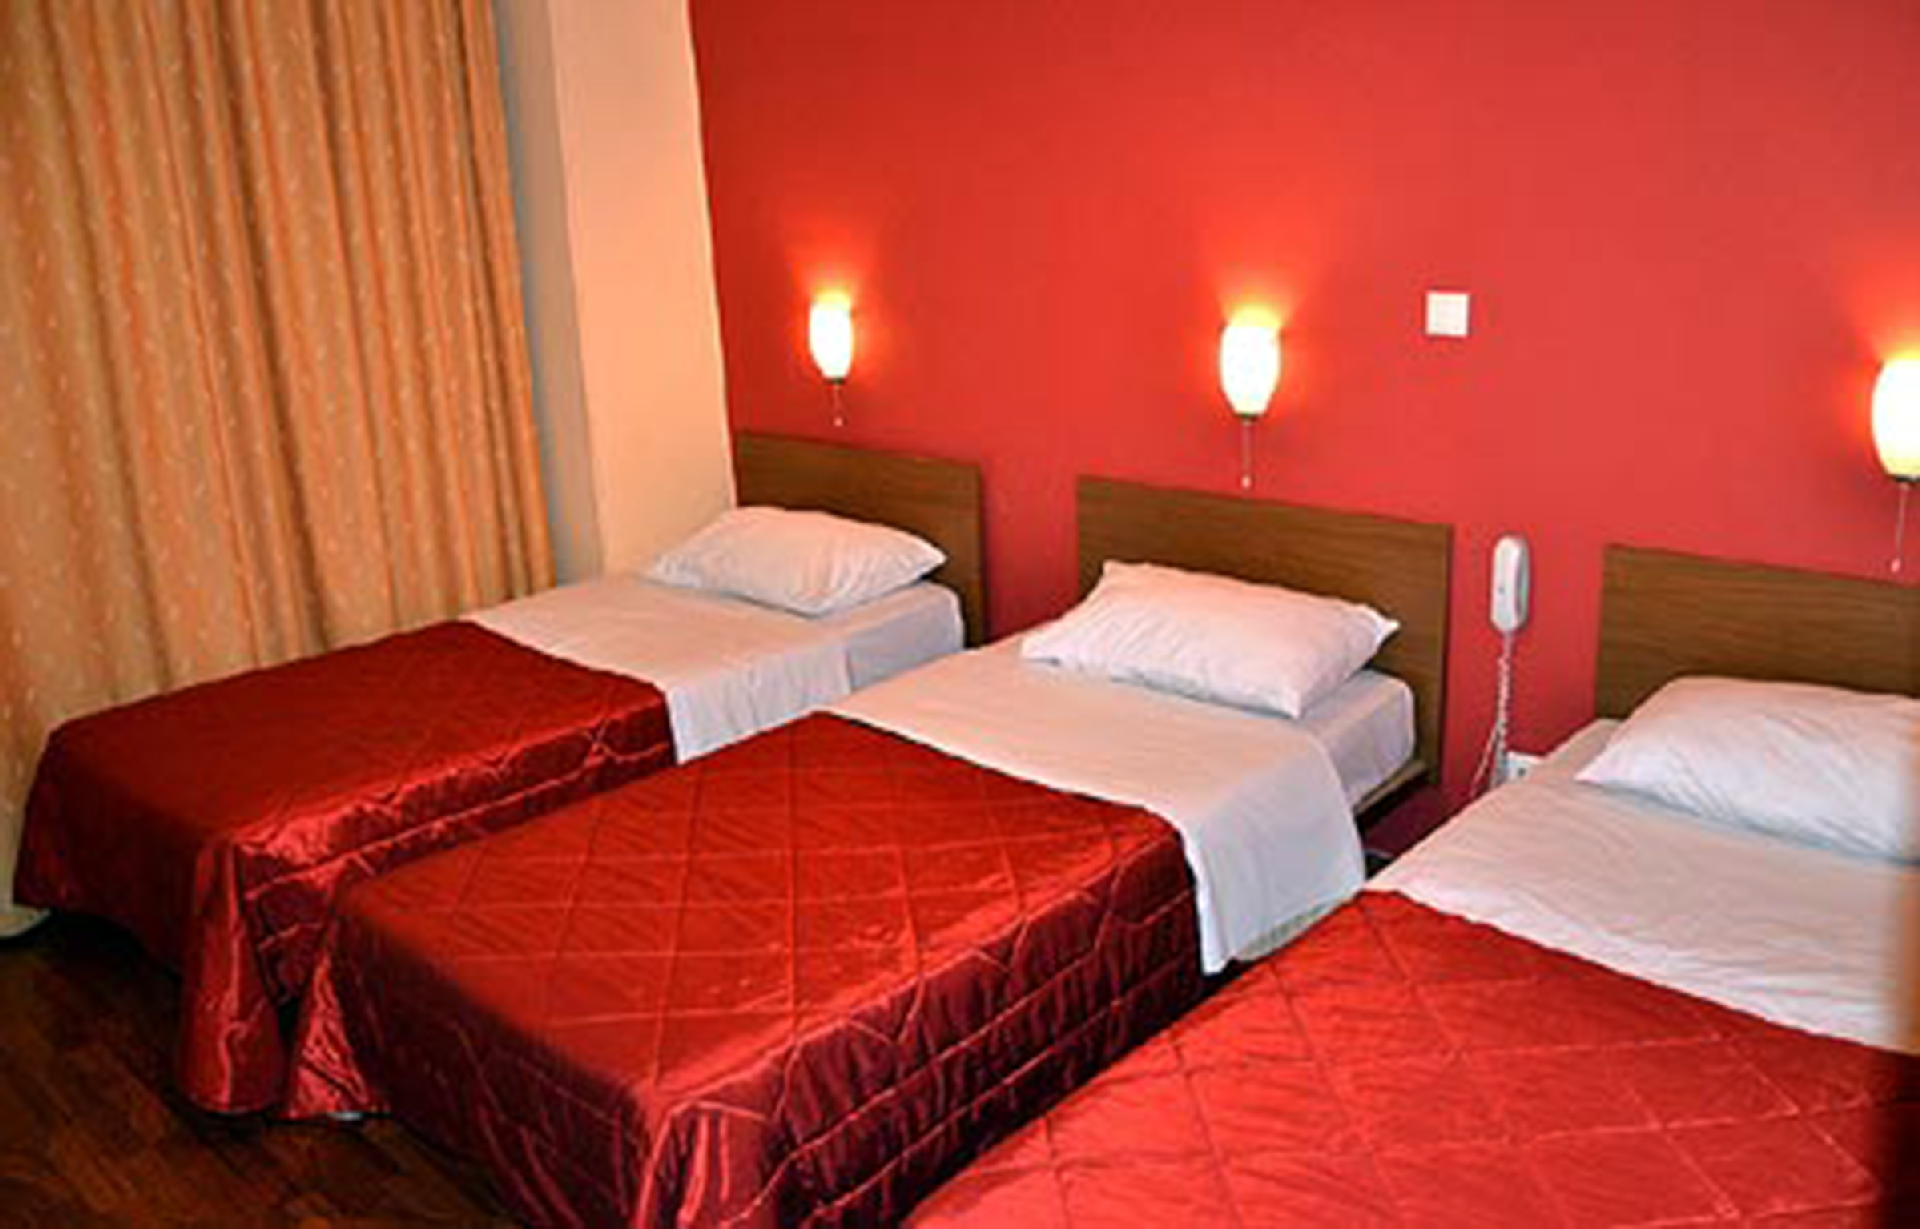 Gästezimmer für 3 Personen ca. 55 m² Ferienwohnung in Dalmatien